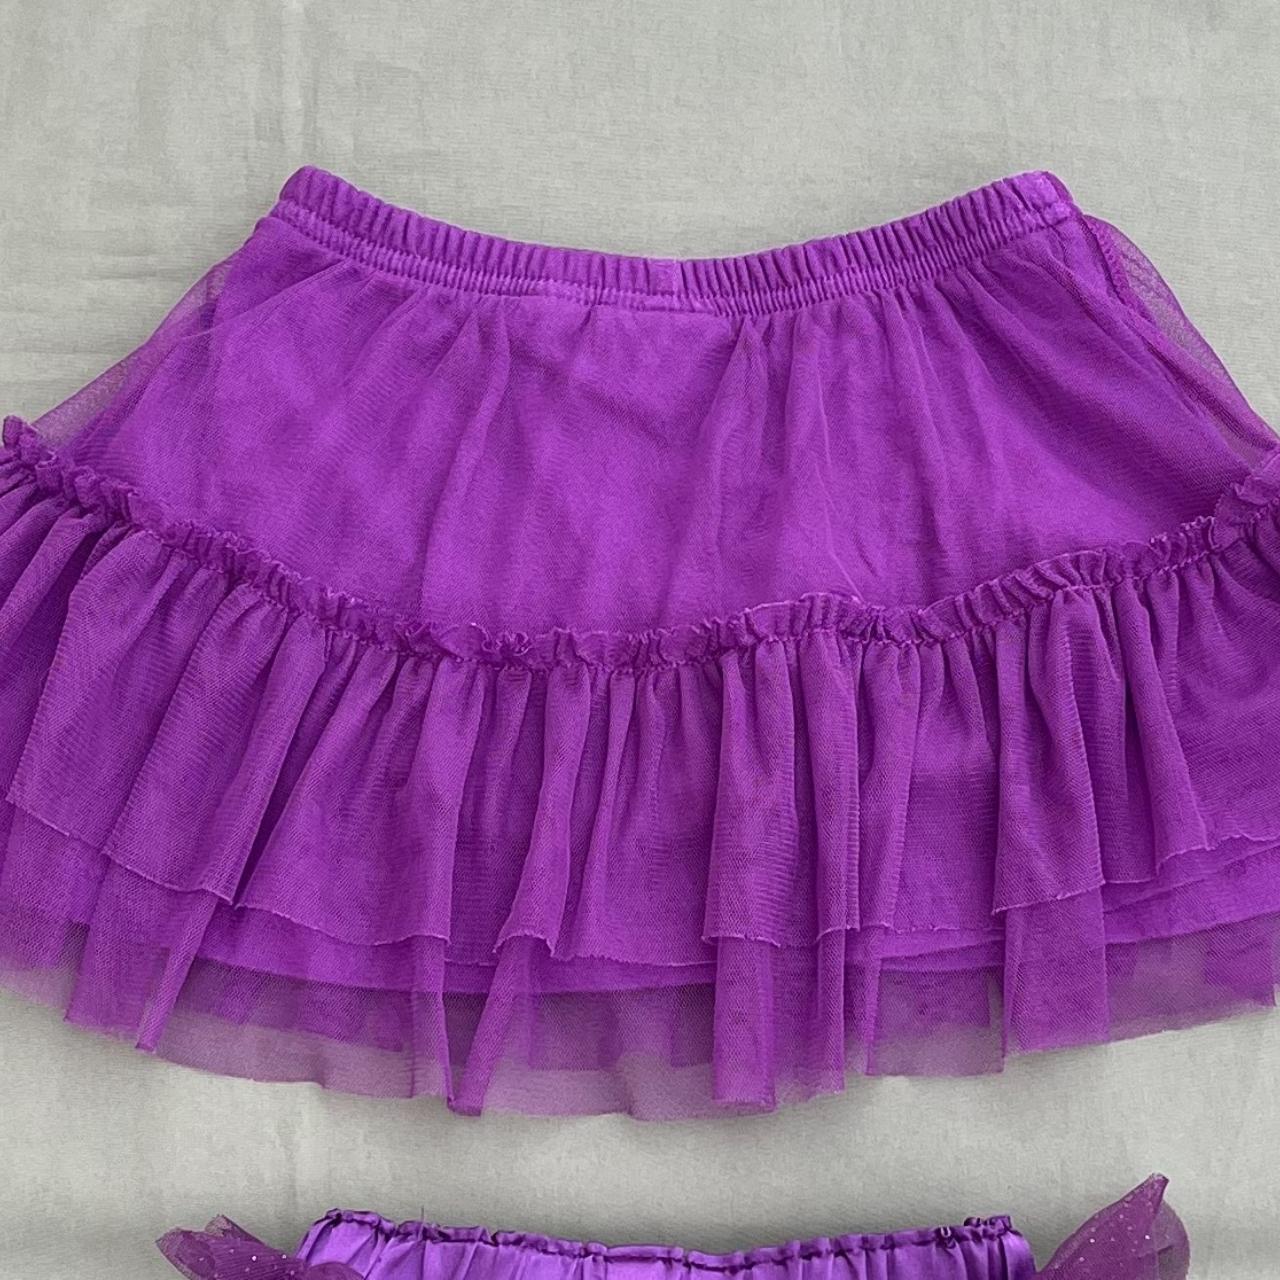 Jumping Beans Purple Skirt | Depop